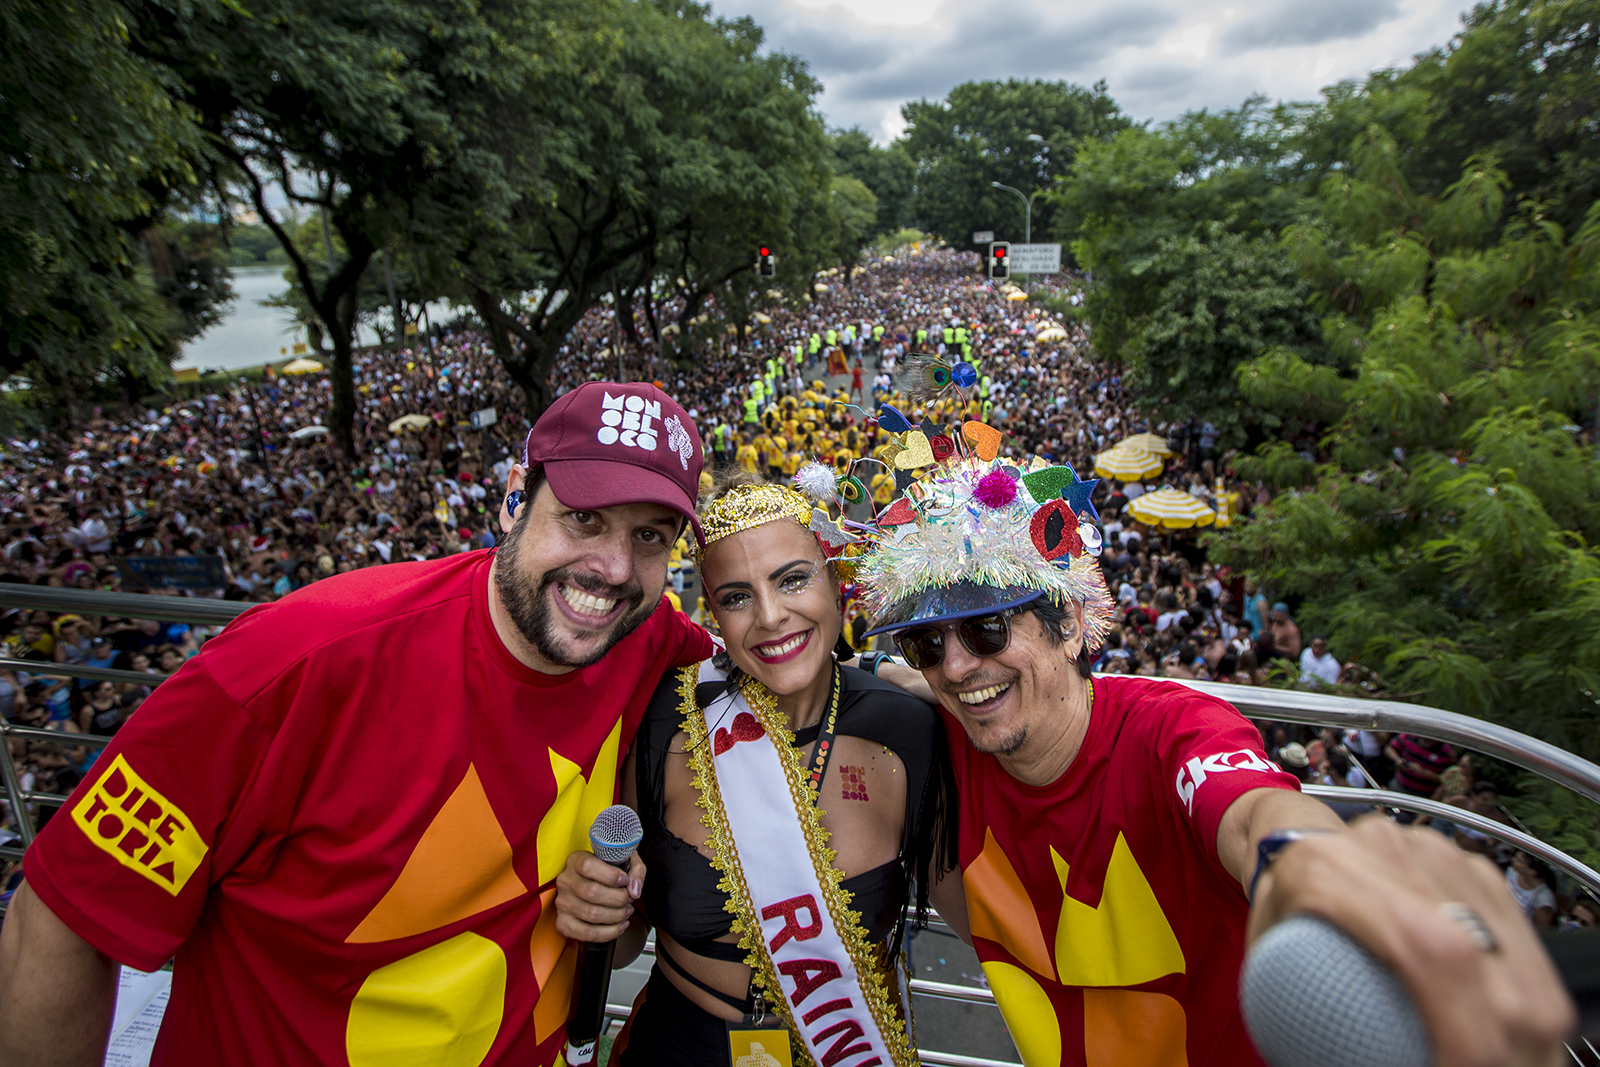 Monobloco seleciona mulheres da música brasileira como tema do carnaval 2019